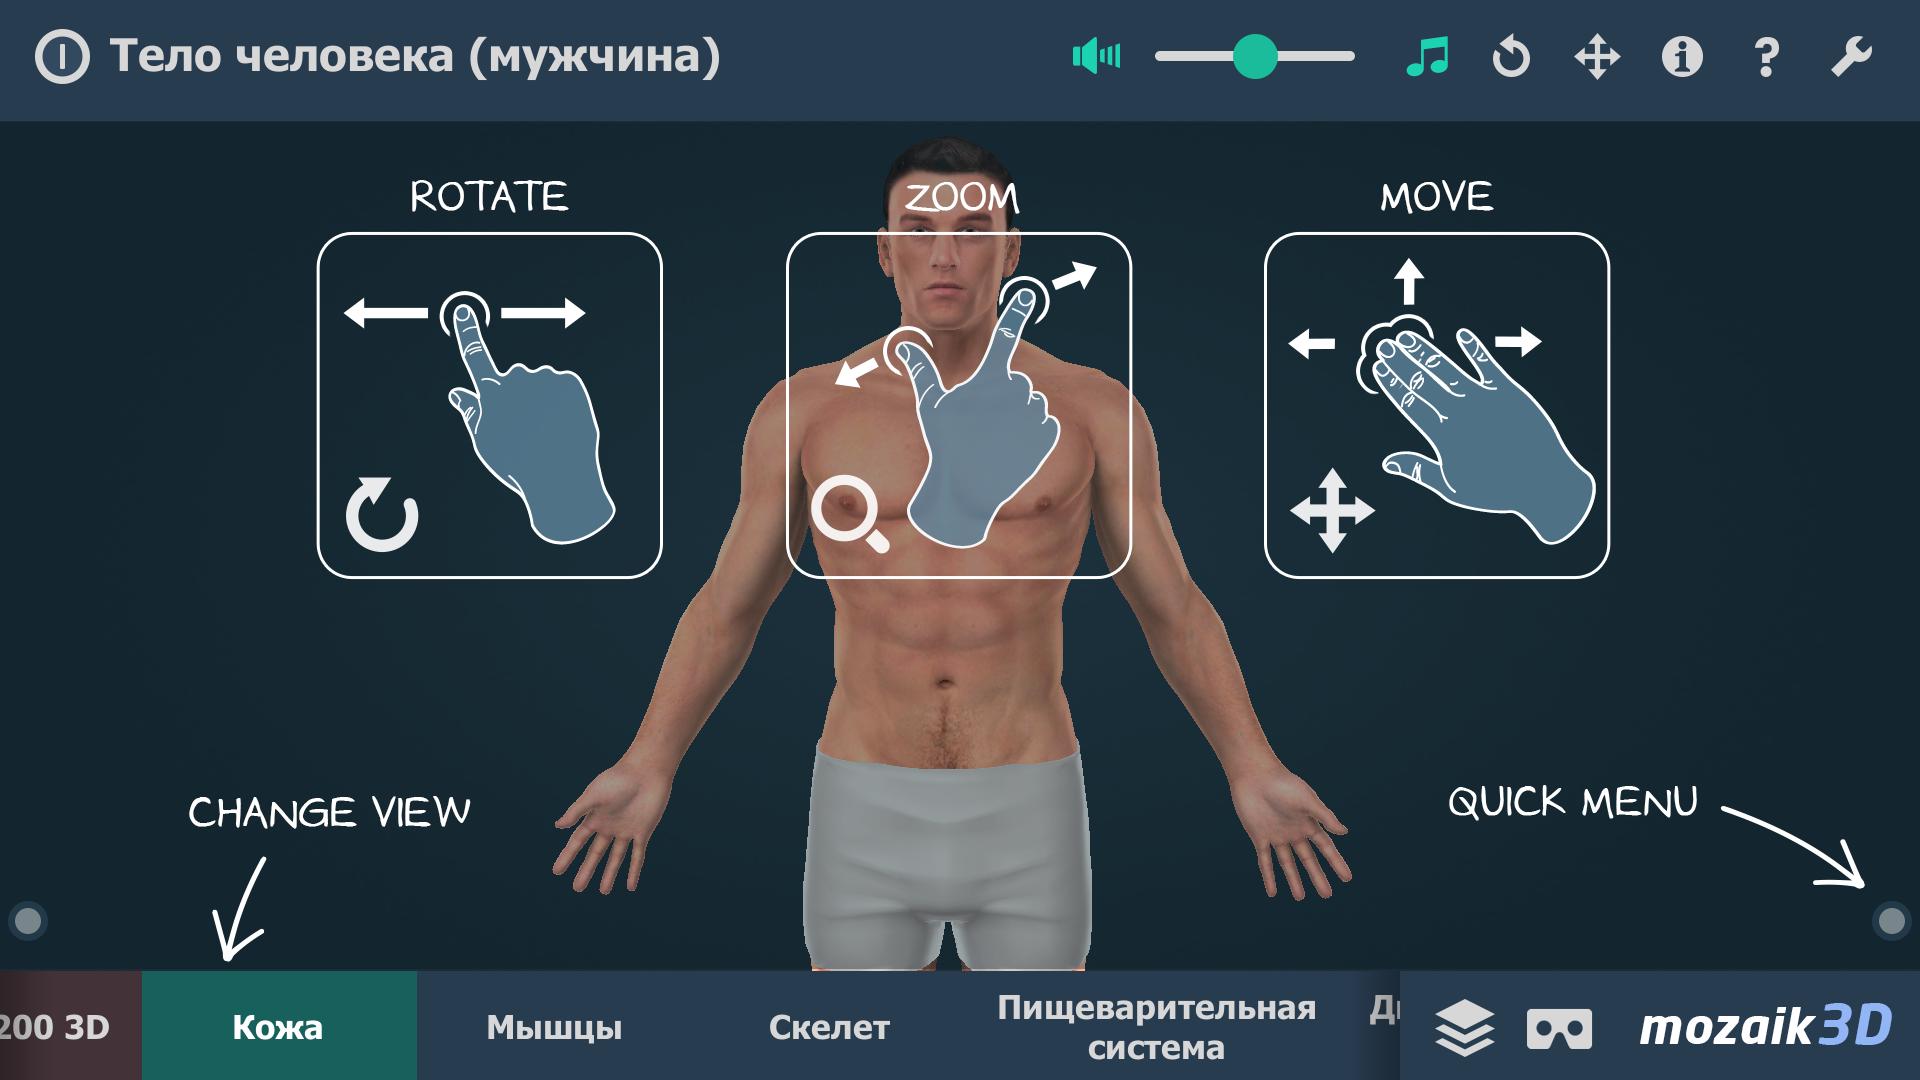 Мягкие тела на андроид. Игра тело человека. Тело андроида мужское. Тело человека игра андроид. Тело человека. Виртуальная реальность | Джонсон Маркус ajnj.